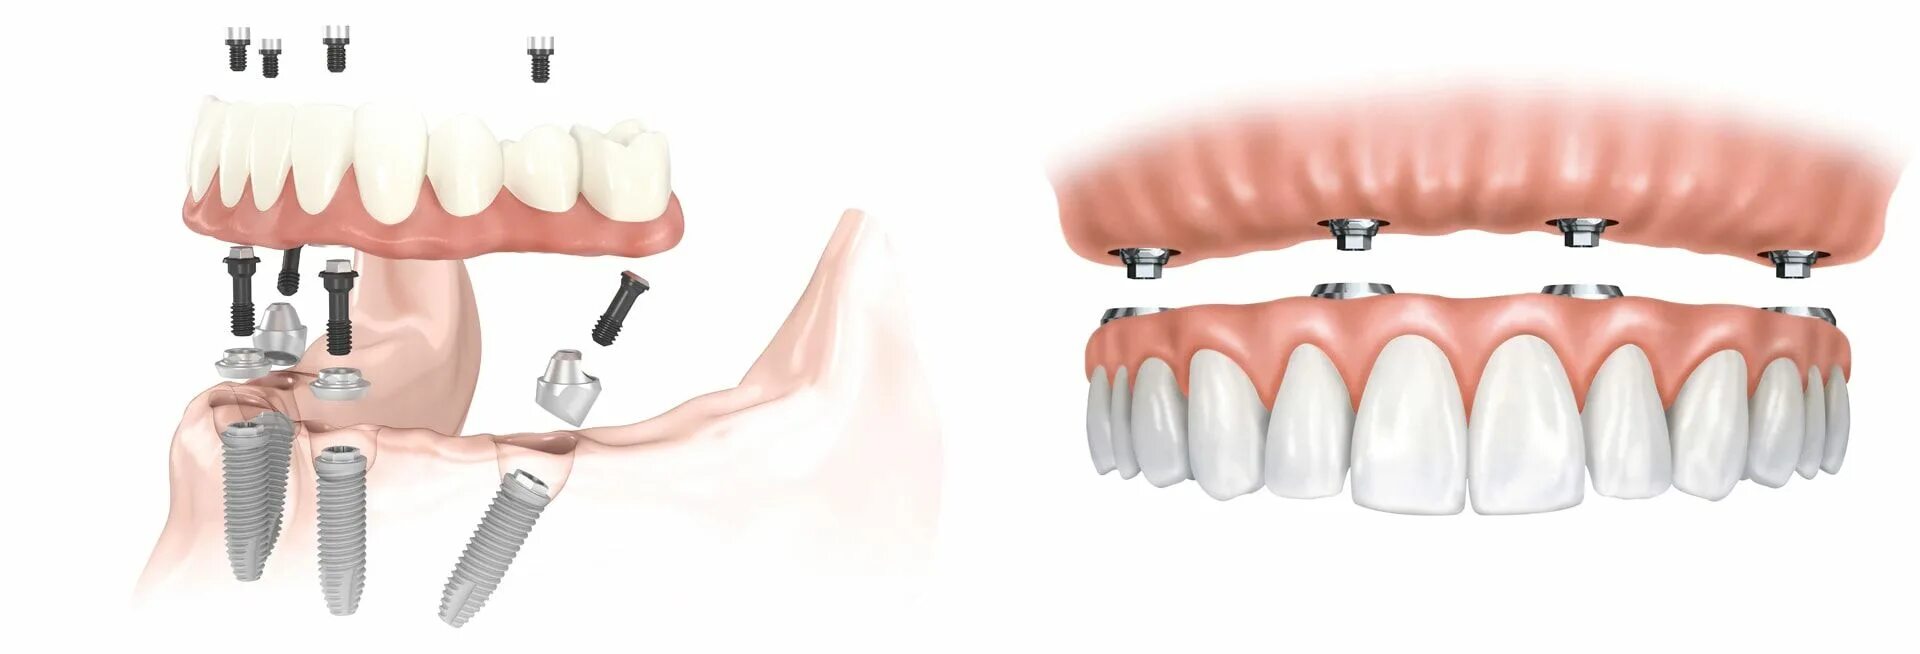 Аллон 4 протезирование. Имплантация зубов all on 4. Имплантация all-on-4 ( всё на 4х). (Метод имплантации all-on-4)методы.